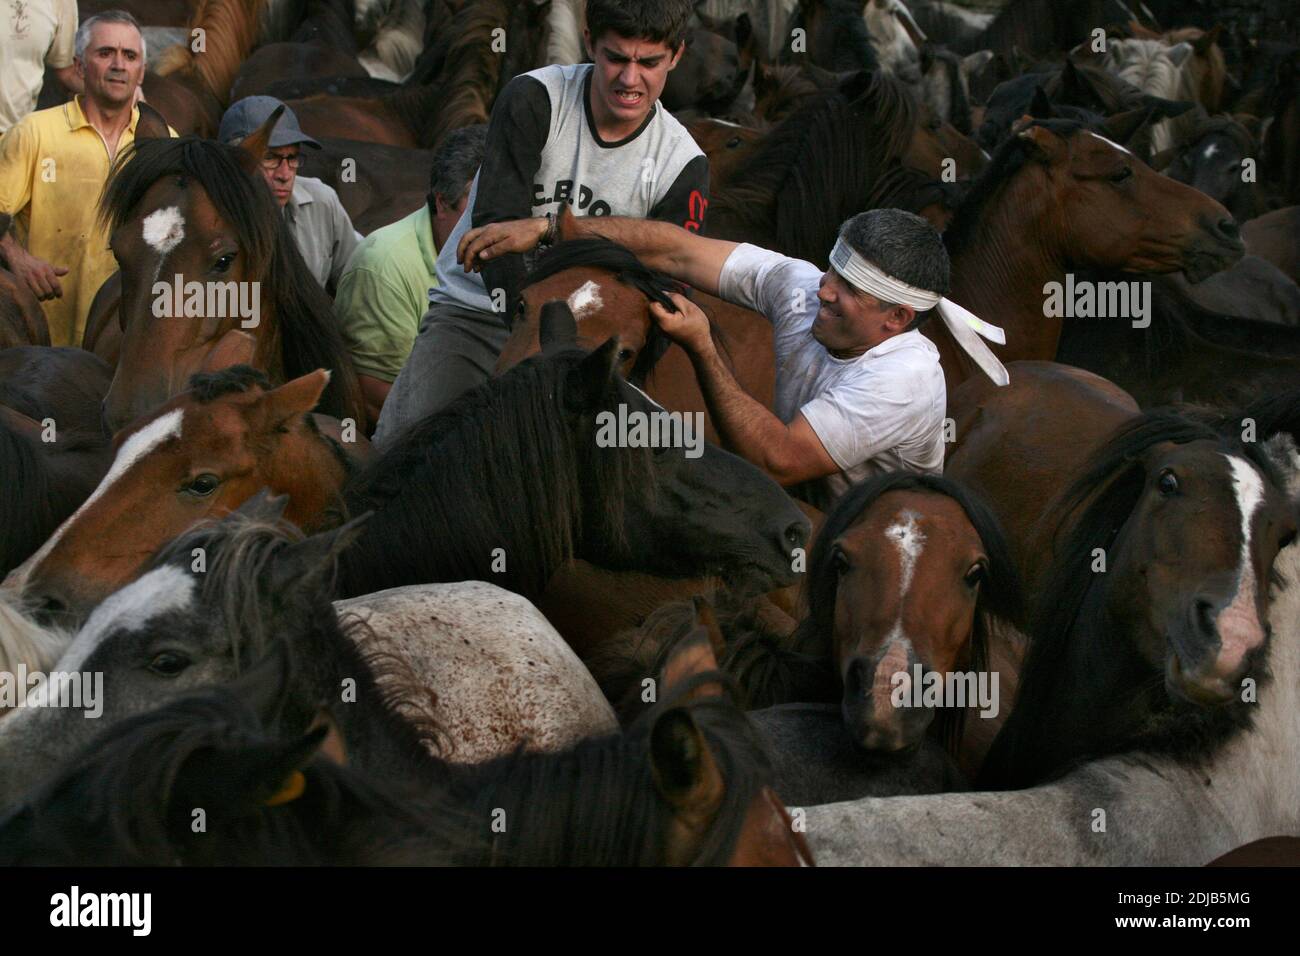 Galizische Aloitadores (Pferdetamer) kämpfen mit ungebrochenen Pferden während der Rapa das Bestas im Dorf Sabucedo in Galicien, Spanien. Galizische Pferde leben das ganze Jahr über frei auf den Almen des Hochlandes. Eines Tages im Juli werden sechshundert Pferde zusammen in das Dorf gefahren, wo das traditionelle Pferdehaltung Festival, bekannt als die Rapa das Bestas (Shearing of the Beasts), in der runden Arena, die als curro bekannt ist, stattfindet. Tapfere lokale Kämpfer, die als Aloitadores bekannt sind, müssen jedes Pferd satteln, nach der plötzlichen Vertreibung aus dem Hochland in die Arena verführt, und dann ihren Schwanz schneiden Stockfoto